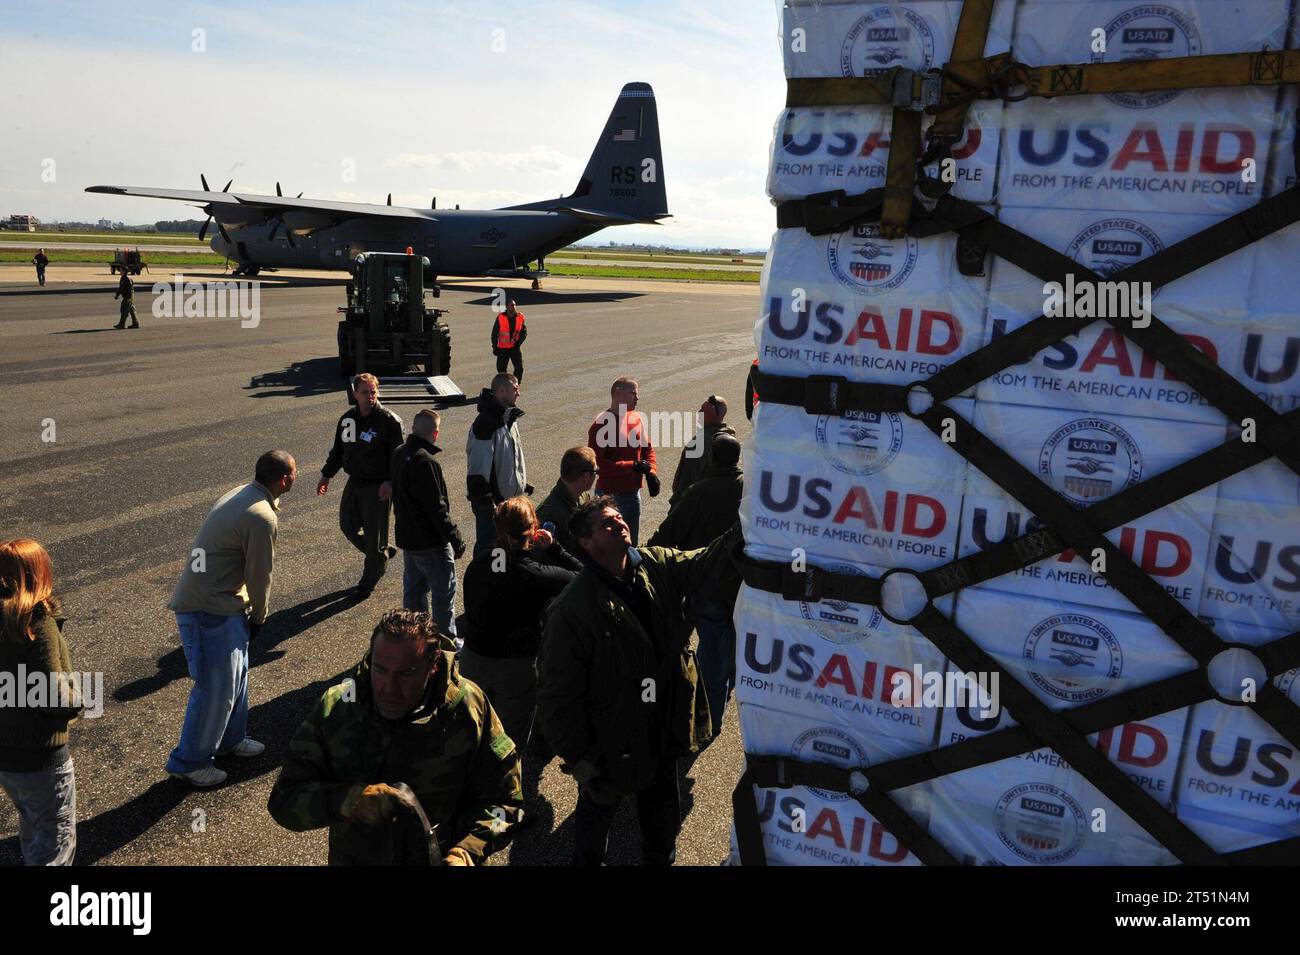 1103048552S-020 PISA, Italien (4. März 2011) Mitarbeiter der US-Luftwaffe, die der 435th Air Mobility Squadron von Ramstein Air Base zugewiesen wurden, laden Decken, Planen und Wassercontainer auf ein C-130-Flugzeug in Pisa, Italien, das nach Tunesien fährt. Die US-Regierung arbeitet mit der internationalen Gemeinschaft zusammen, um die humanitären Bedürfnisse der Lybischen Bevölkerung und anderer Menschen im Land, die über die Grenzen geflohen sind, zu decken. (US-Armee Stockfoto